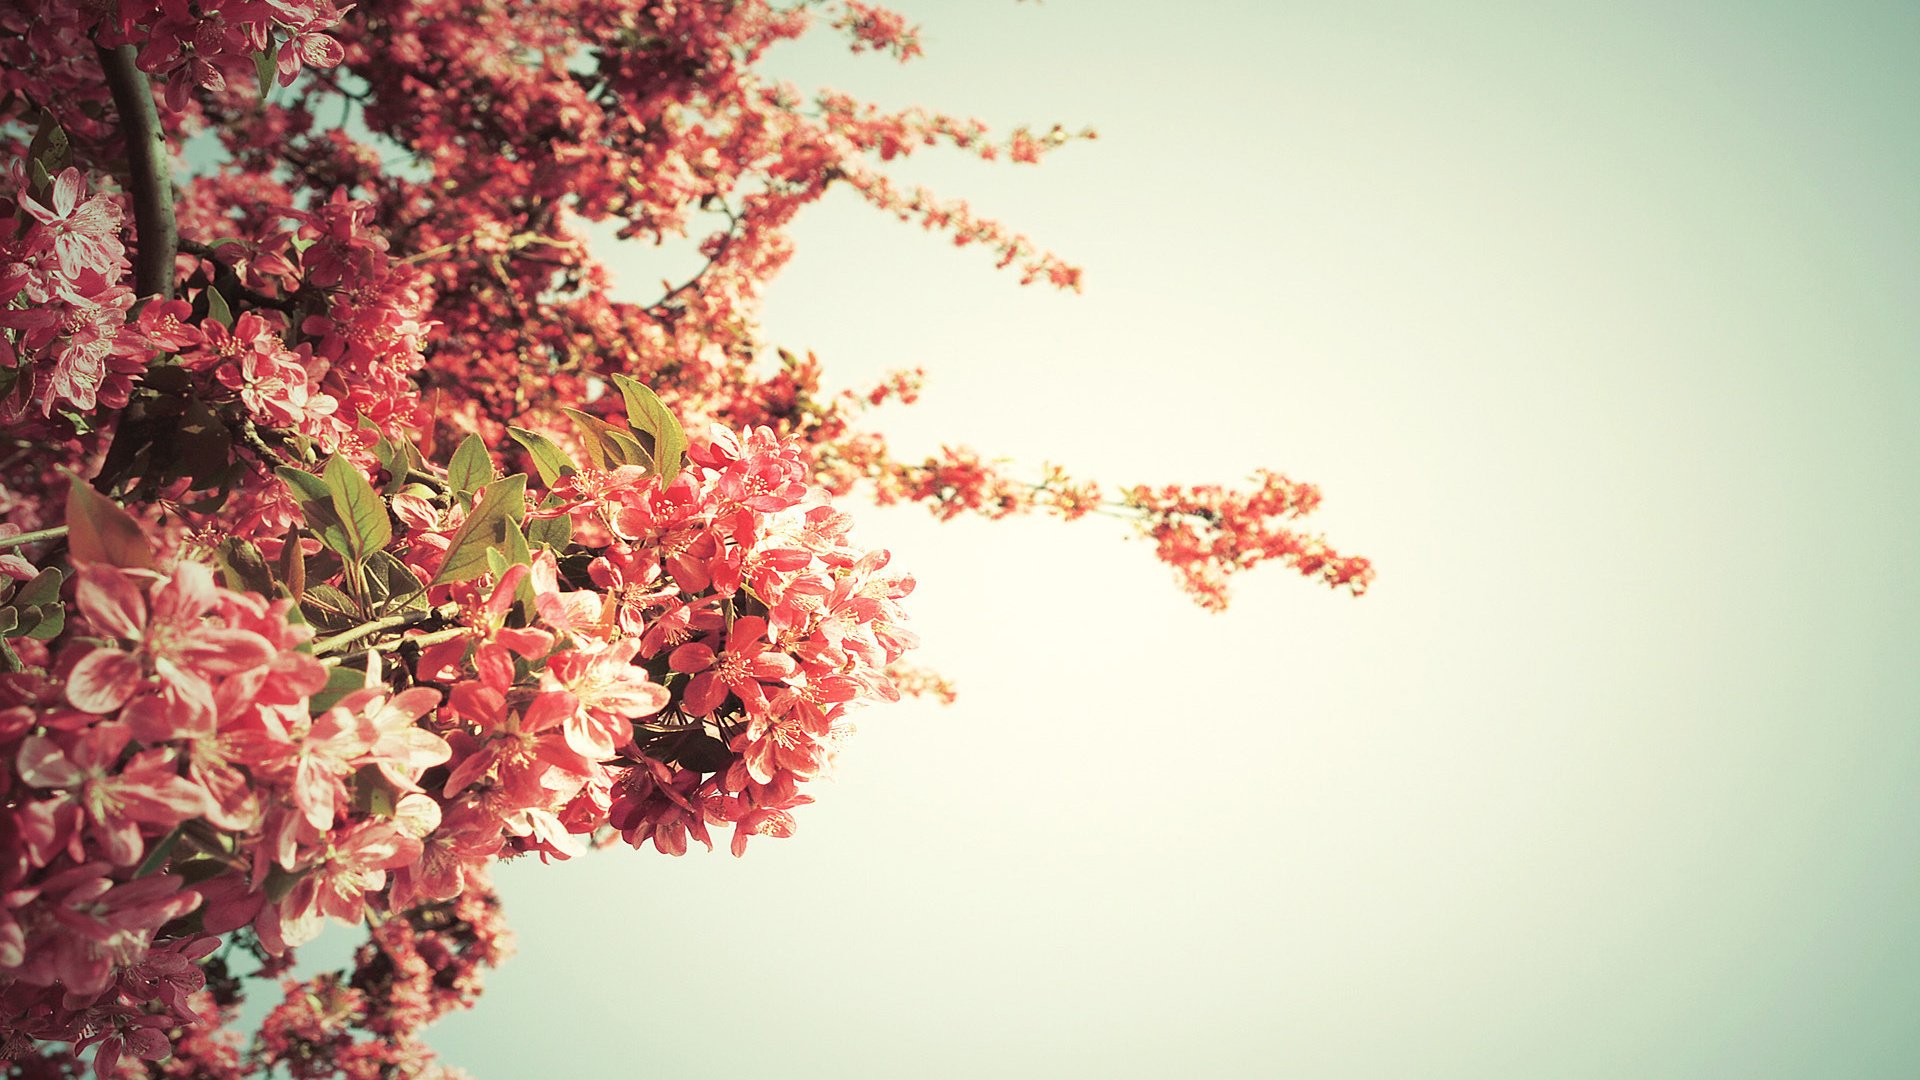 Цветы на фоне дерева